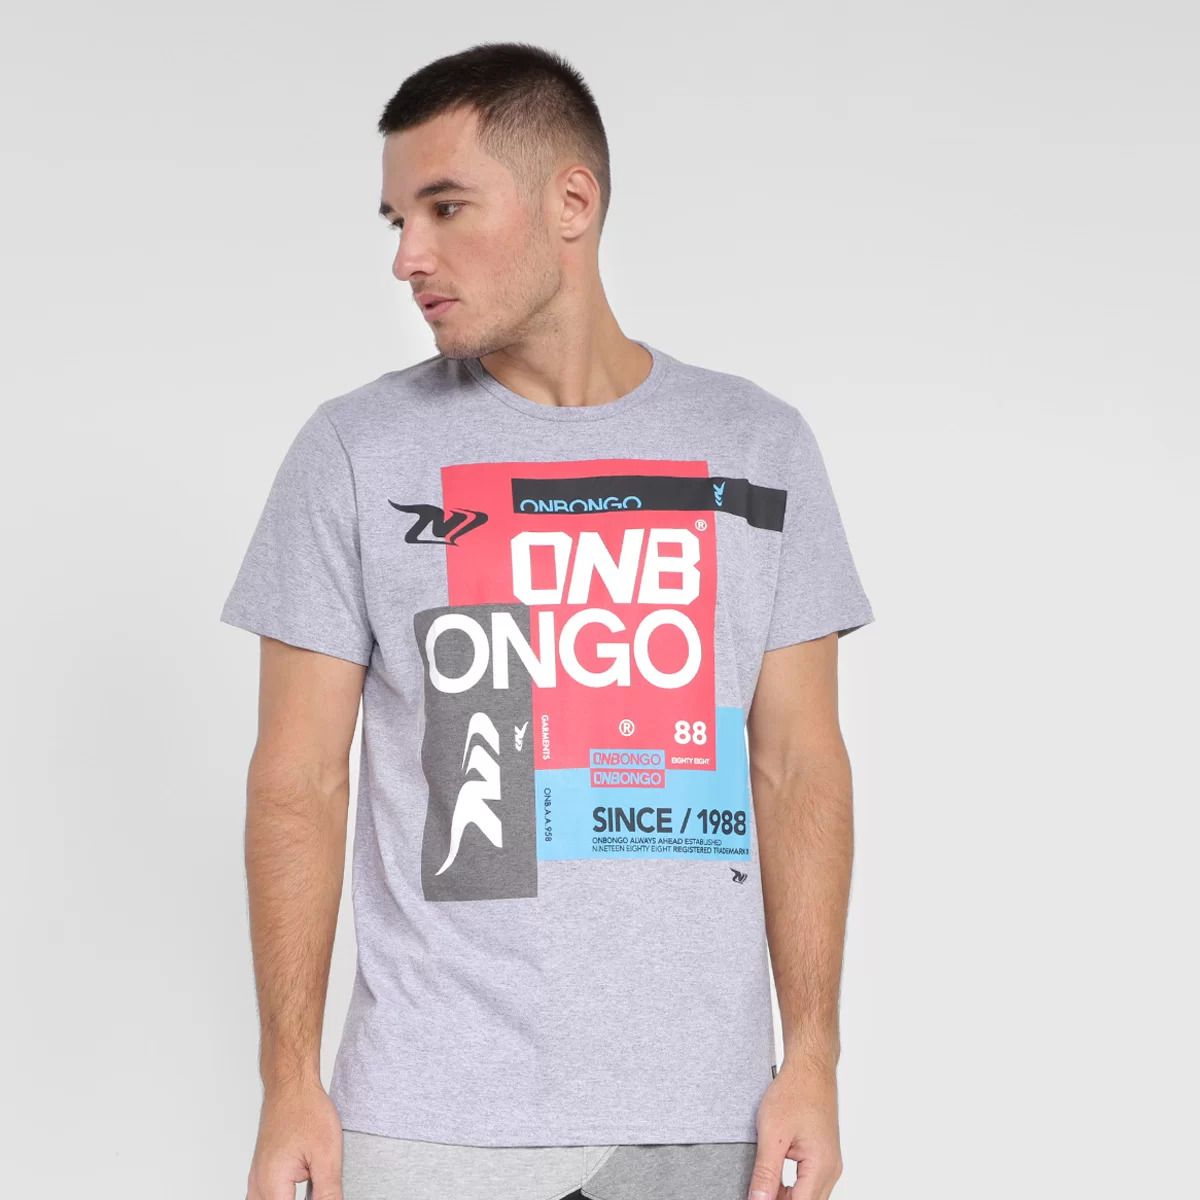 Camiseta Onbongo Masculina Estampada - Surf Street Camisetas Calças Blusas  Bermudas Bonés Acessorios